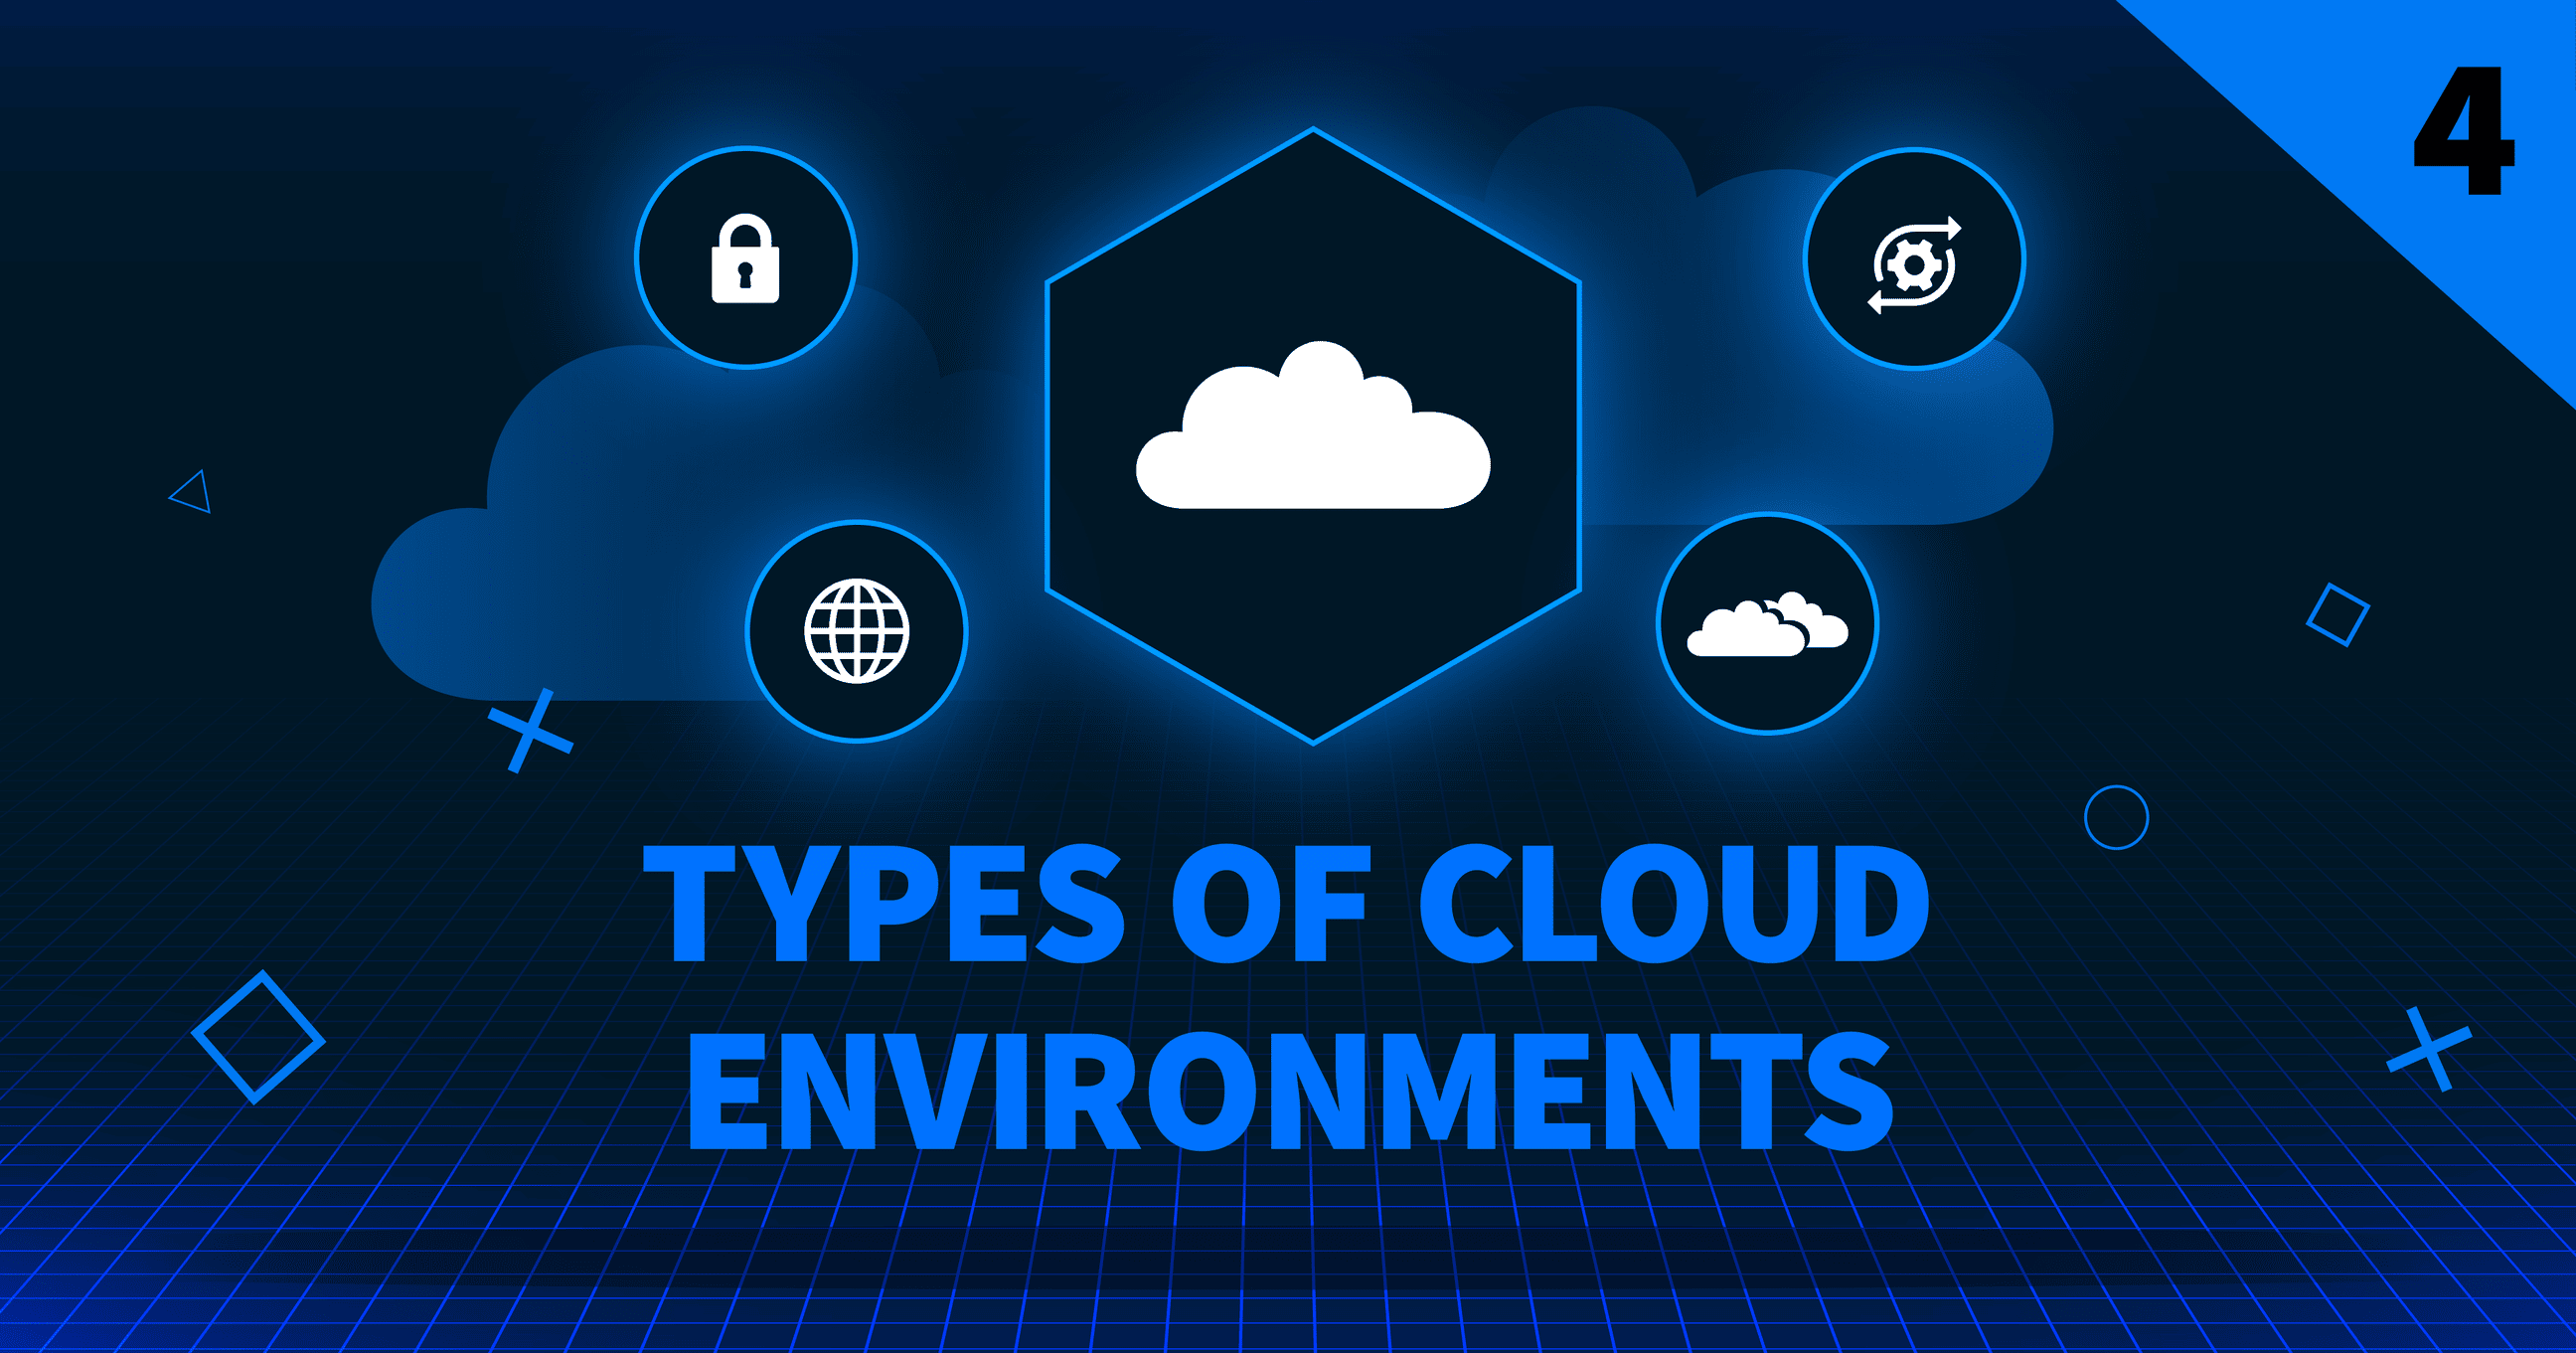 Tipos de entornos en nube Imagen de cabecera del blog